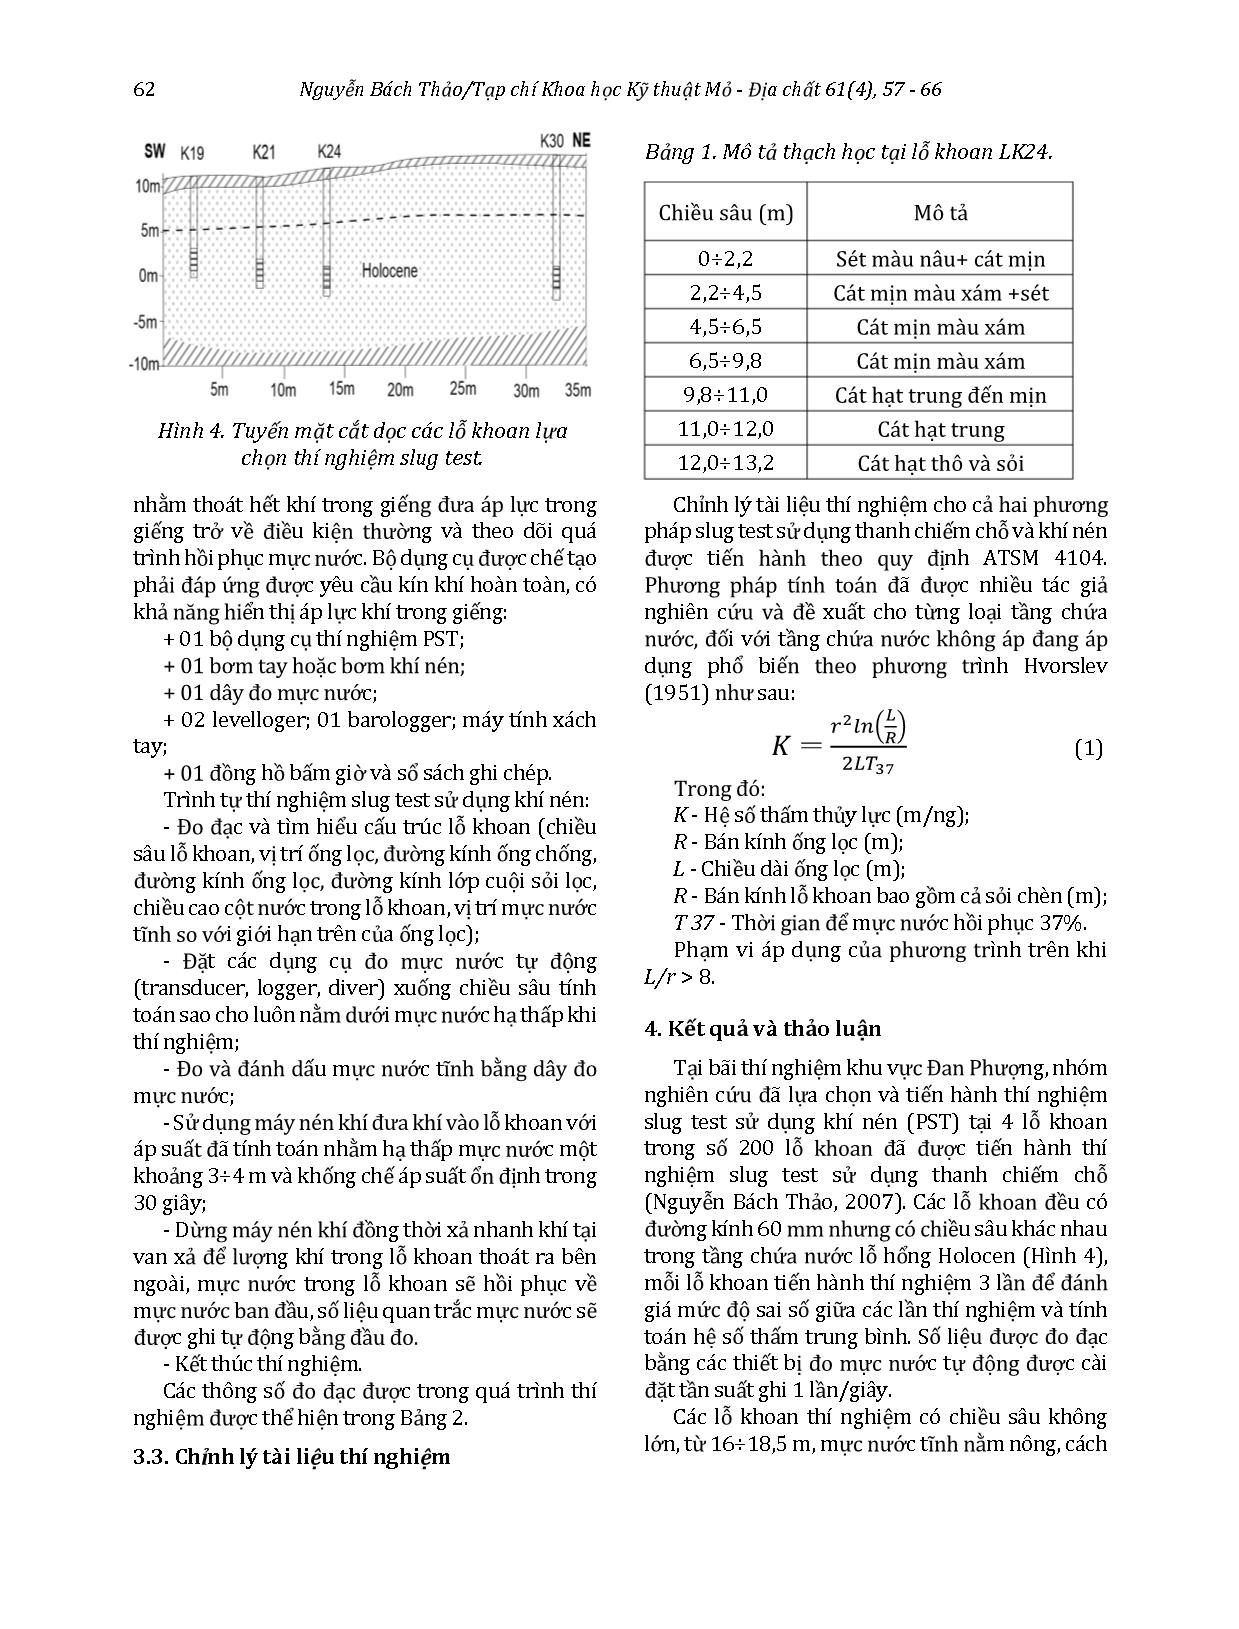 So sánh các phương pháp thí nghiệm slug test trong xác định hệ số thấm cho tầng Holocen vùng Đan Phượng trang 6